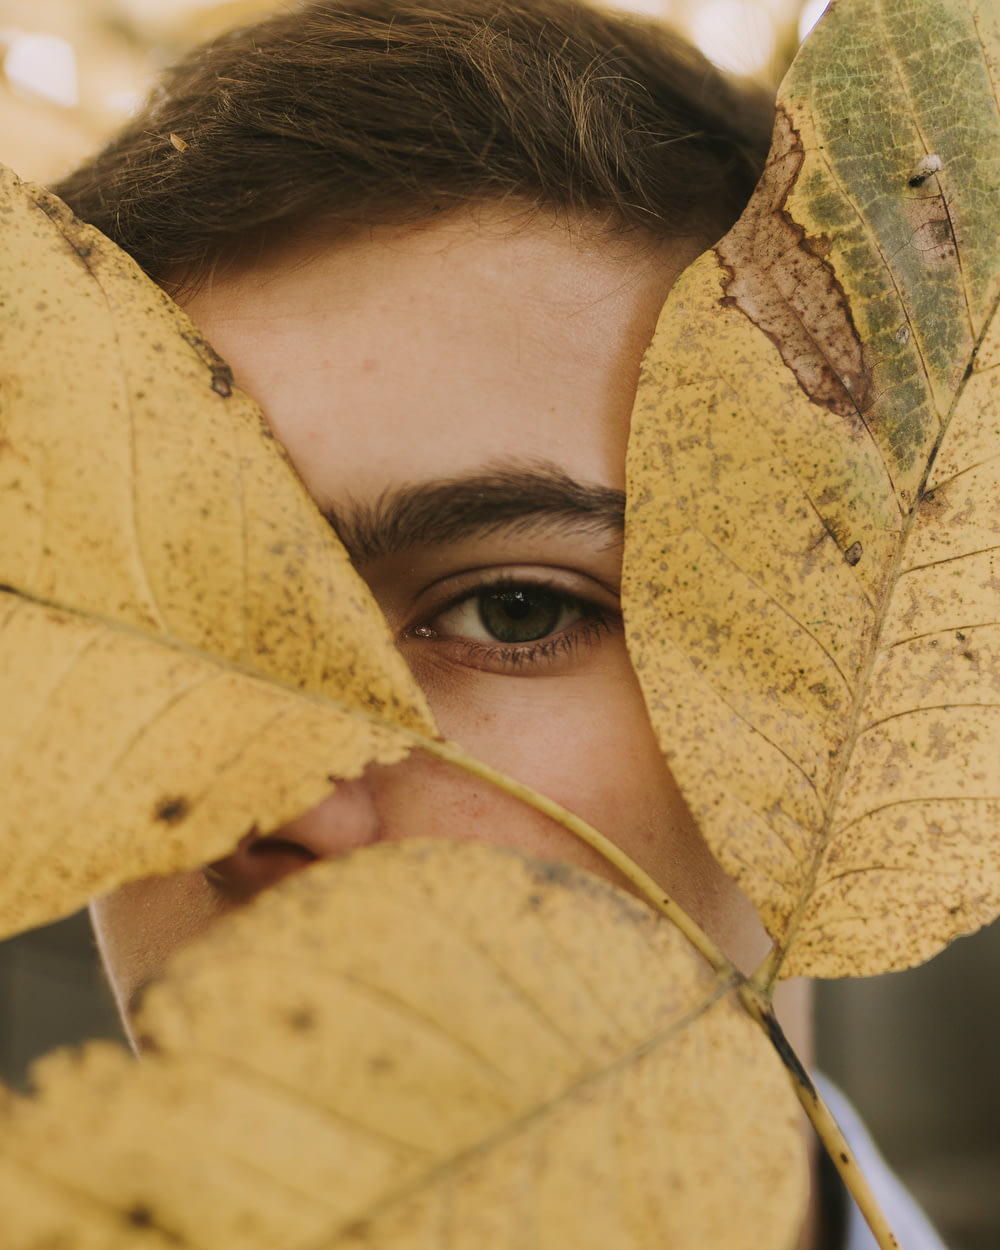 feuilles brunes sur le visage de la personne pendant la journée